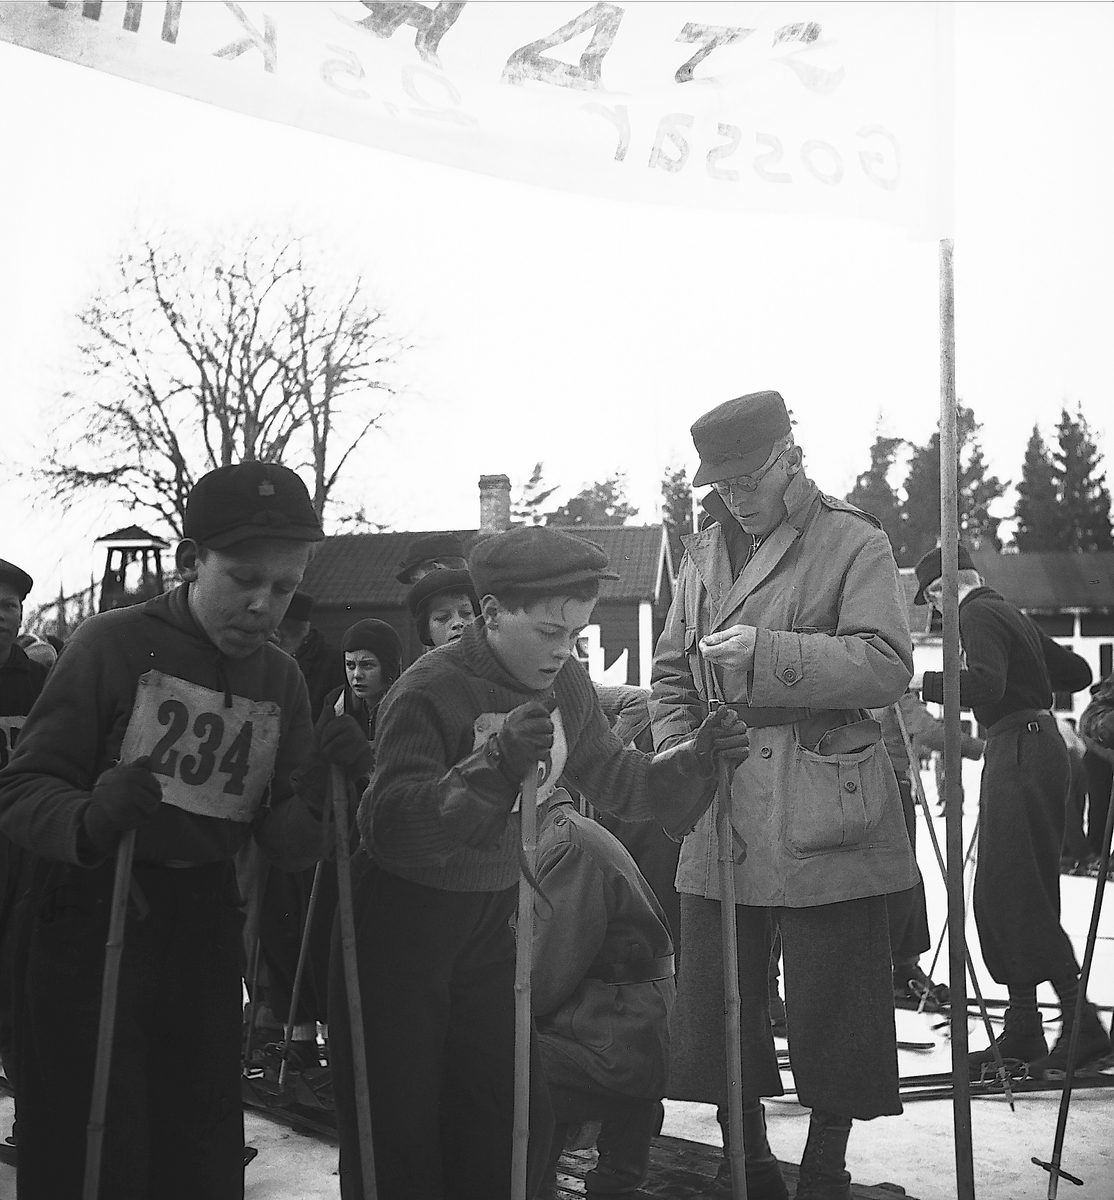 Februari 1938. Fettisdagstävling skidåkning.